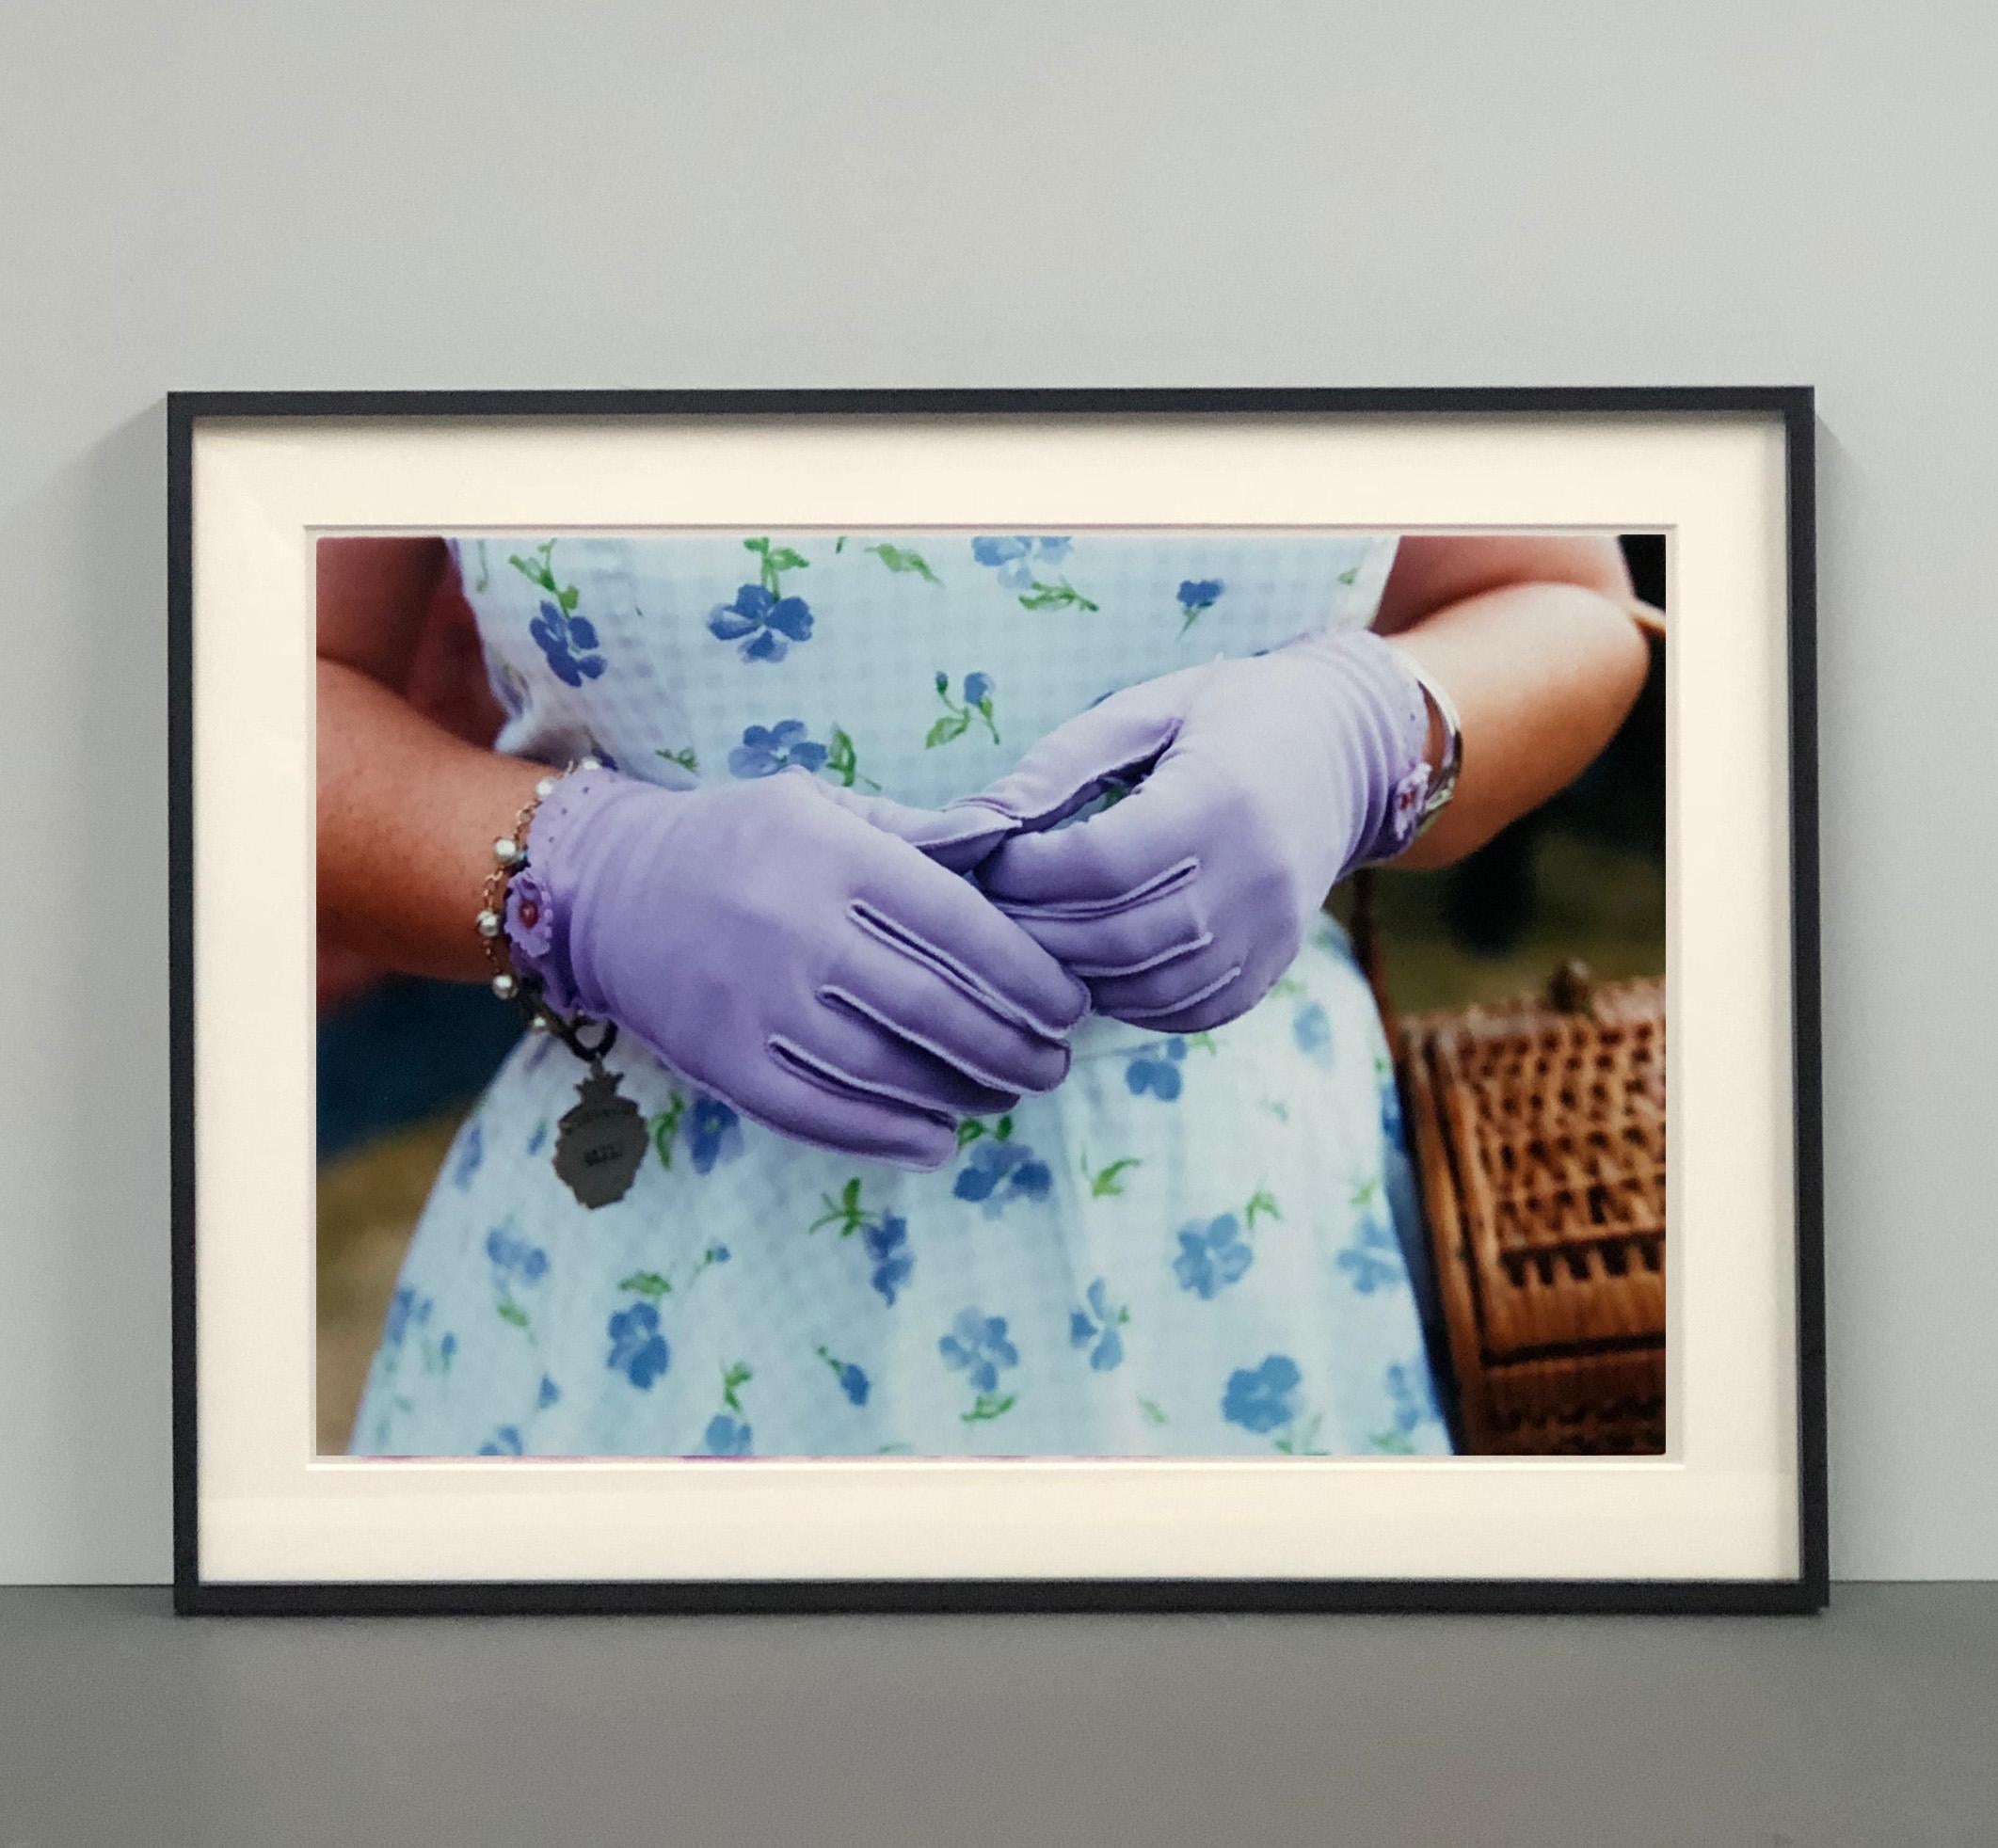 Fliederfarbene Handschuhe, Goodwood, Chichester - Feminine Mode, Farbfotografie (Zeitgenössisch), Photograph, von Richard Heeps